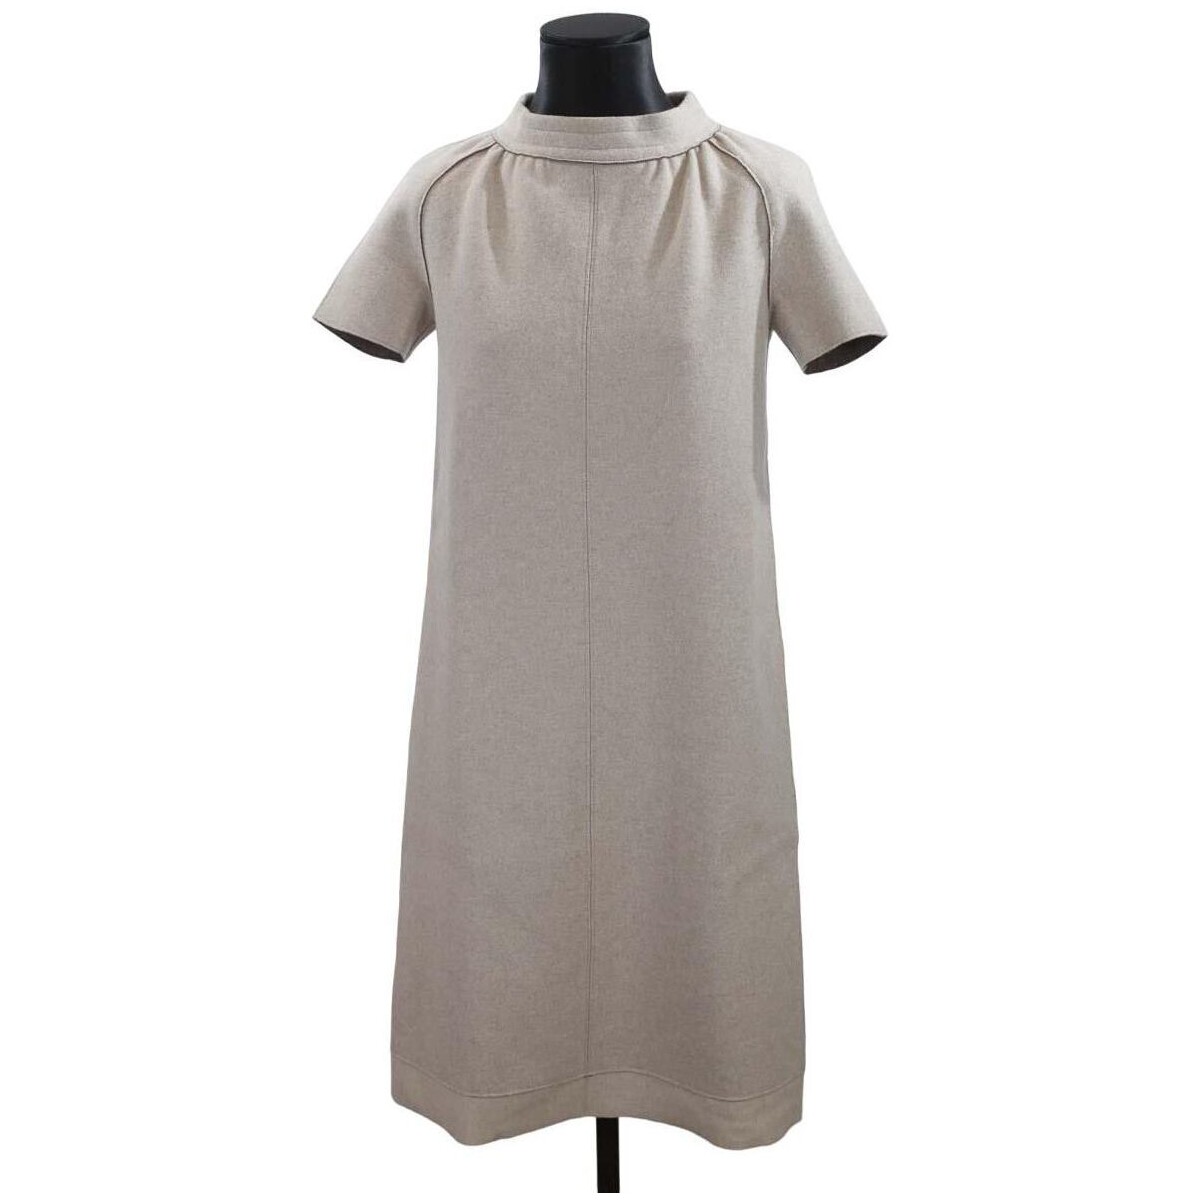 Vêtements Femme Robes saint laurent croc effect leather card holder Robe en laine Blanc